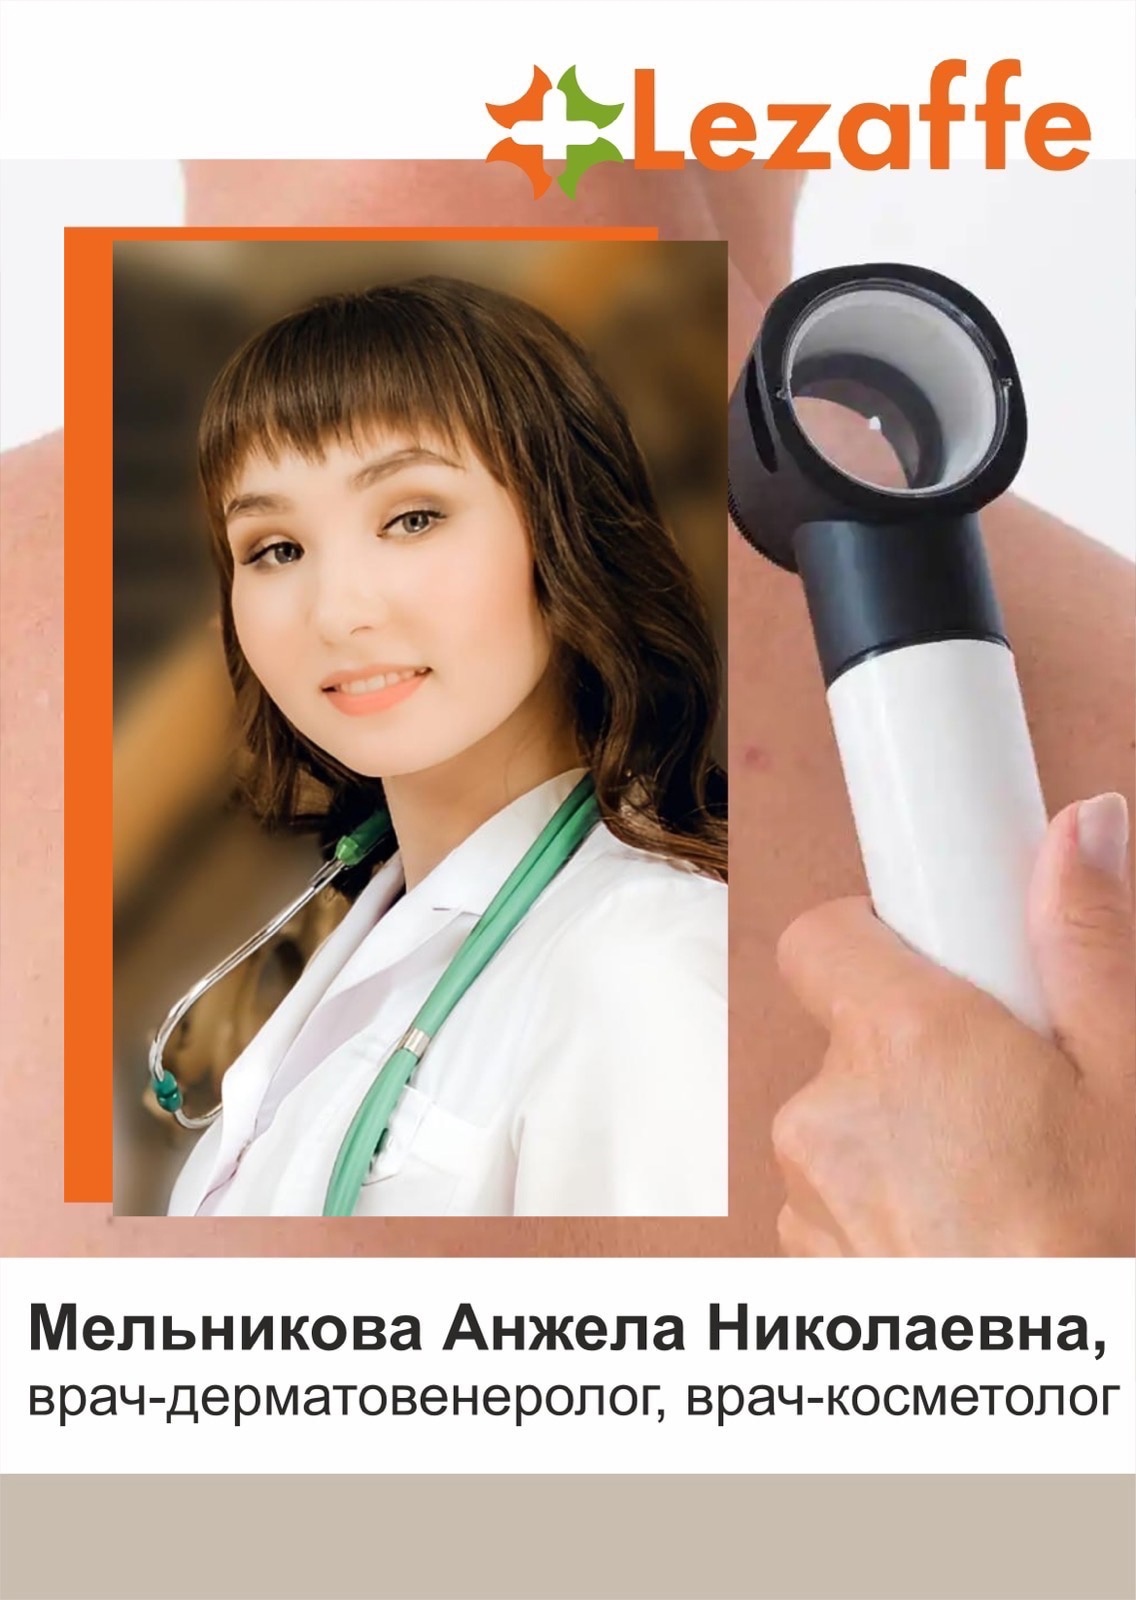 Мельникова Анжела Николаевна - врач-дерматовенеролог, врач-косметолог г. Нягань